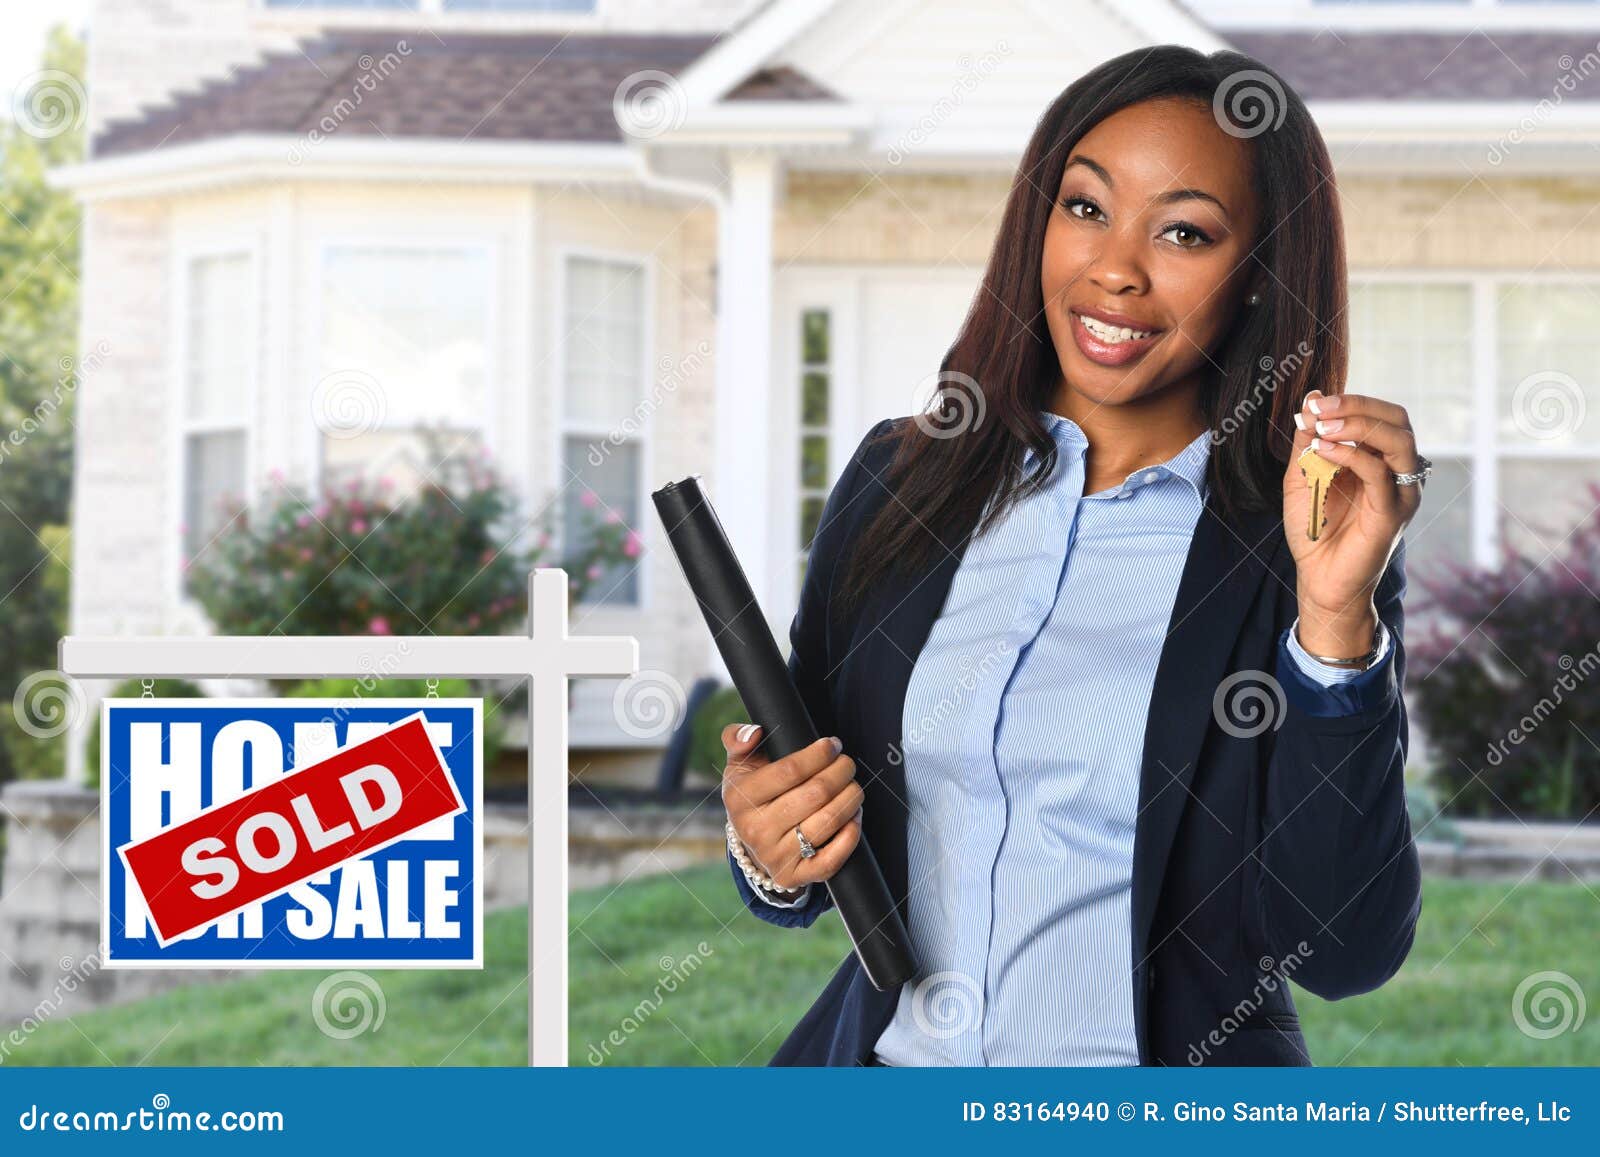 real estate agent black